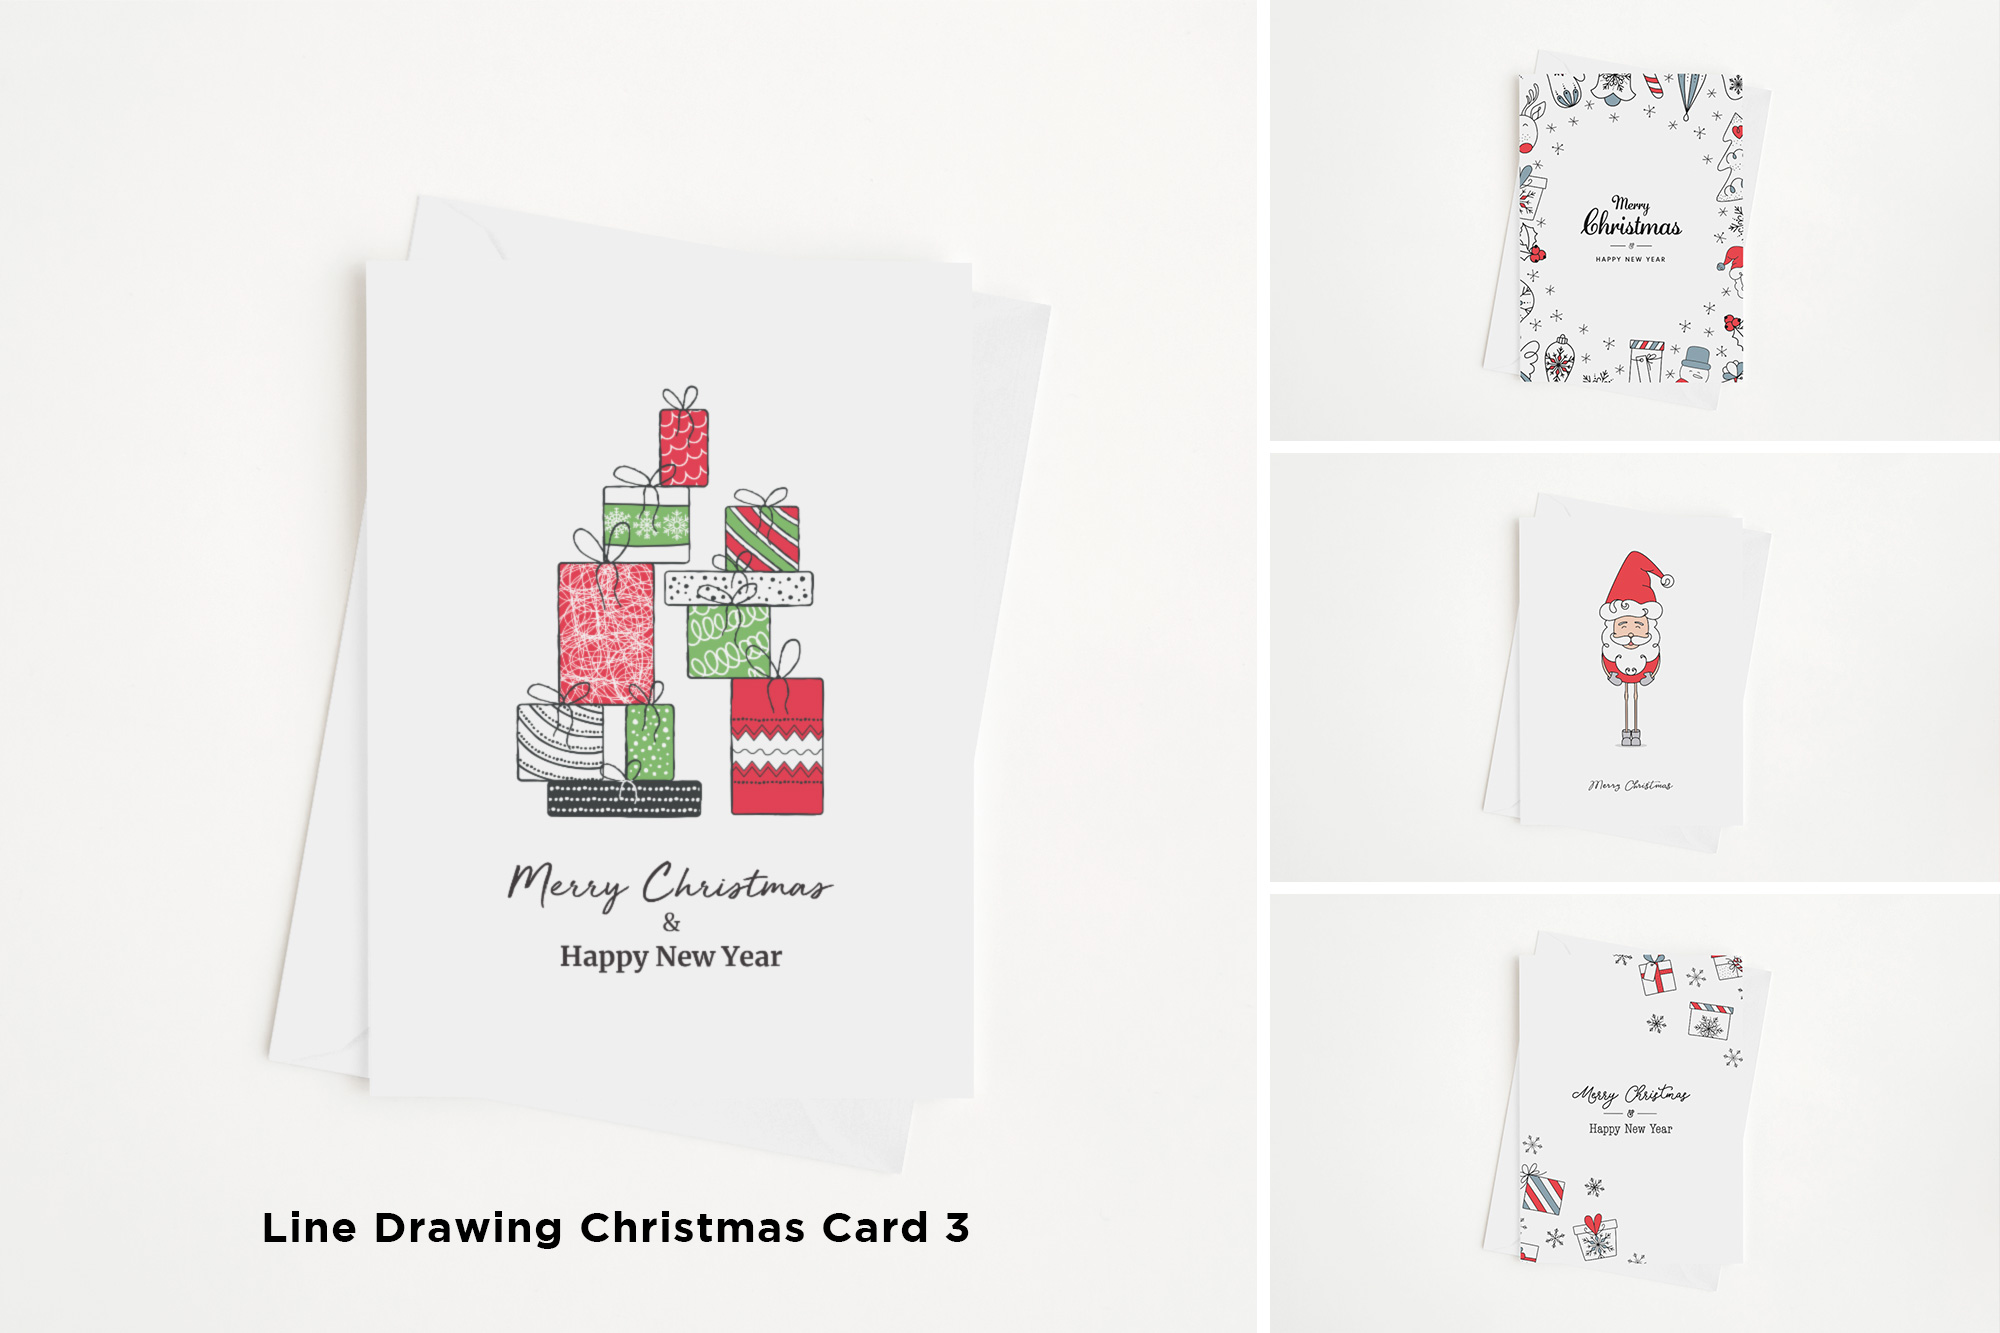 Line Drawing Christmas Card 3 Mockup